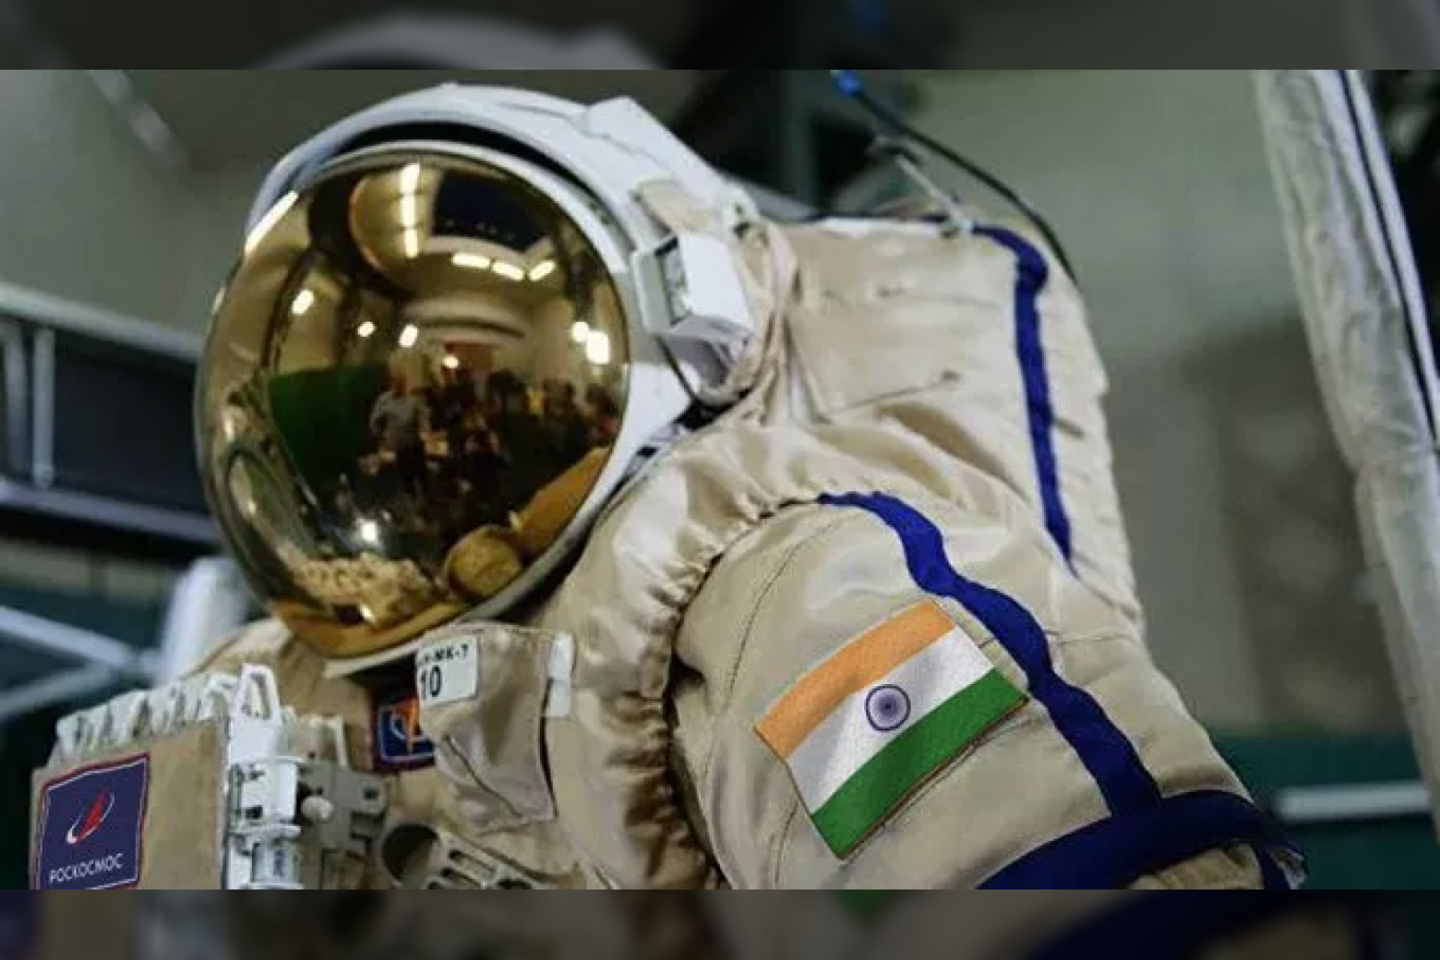  Keturi Indijos astronautai neseniai išvyko į Rusiją treniruotis būsimoms misijoms su įgula, kurių pirmoji galėtų prasidėti 2022 arba 2023 m. <br> Roscosmos nuotr.